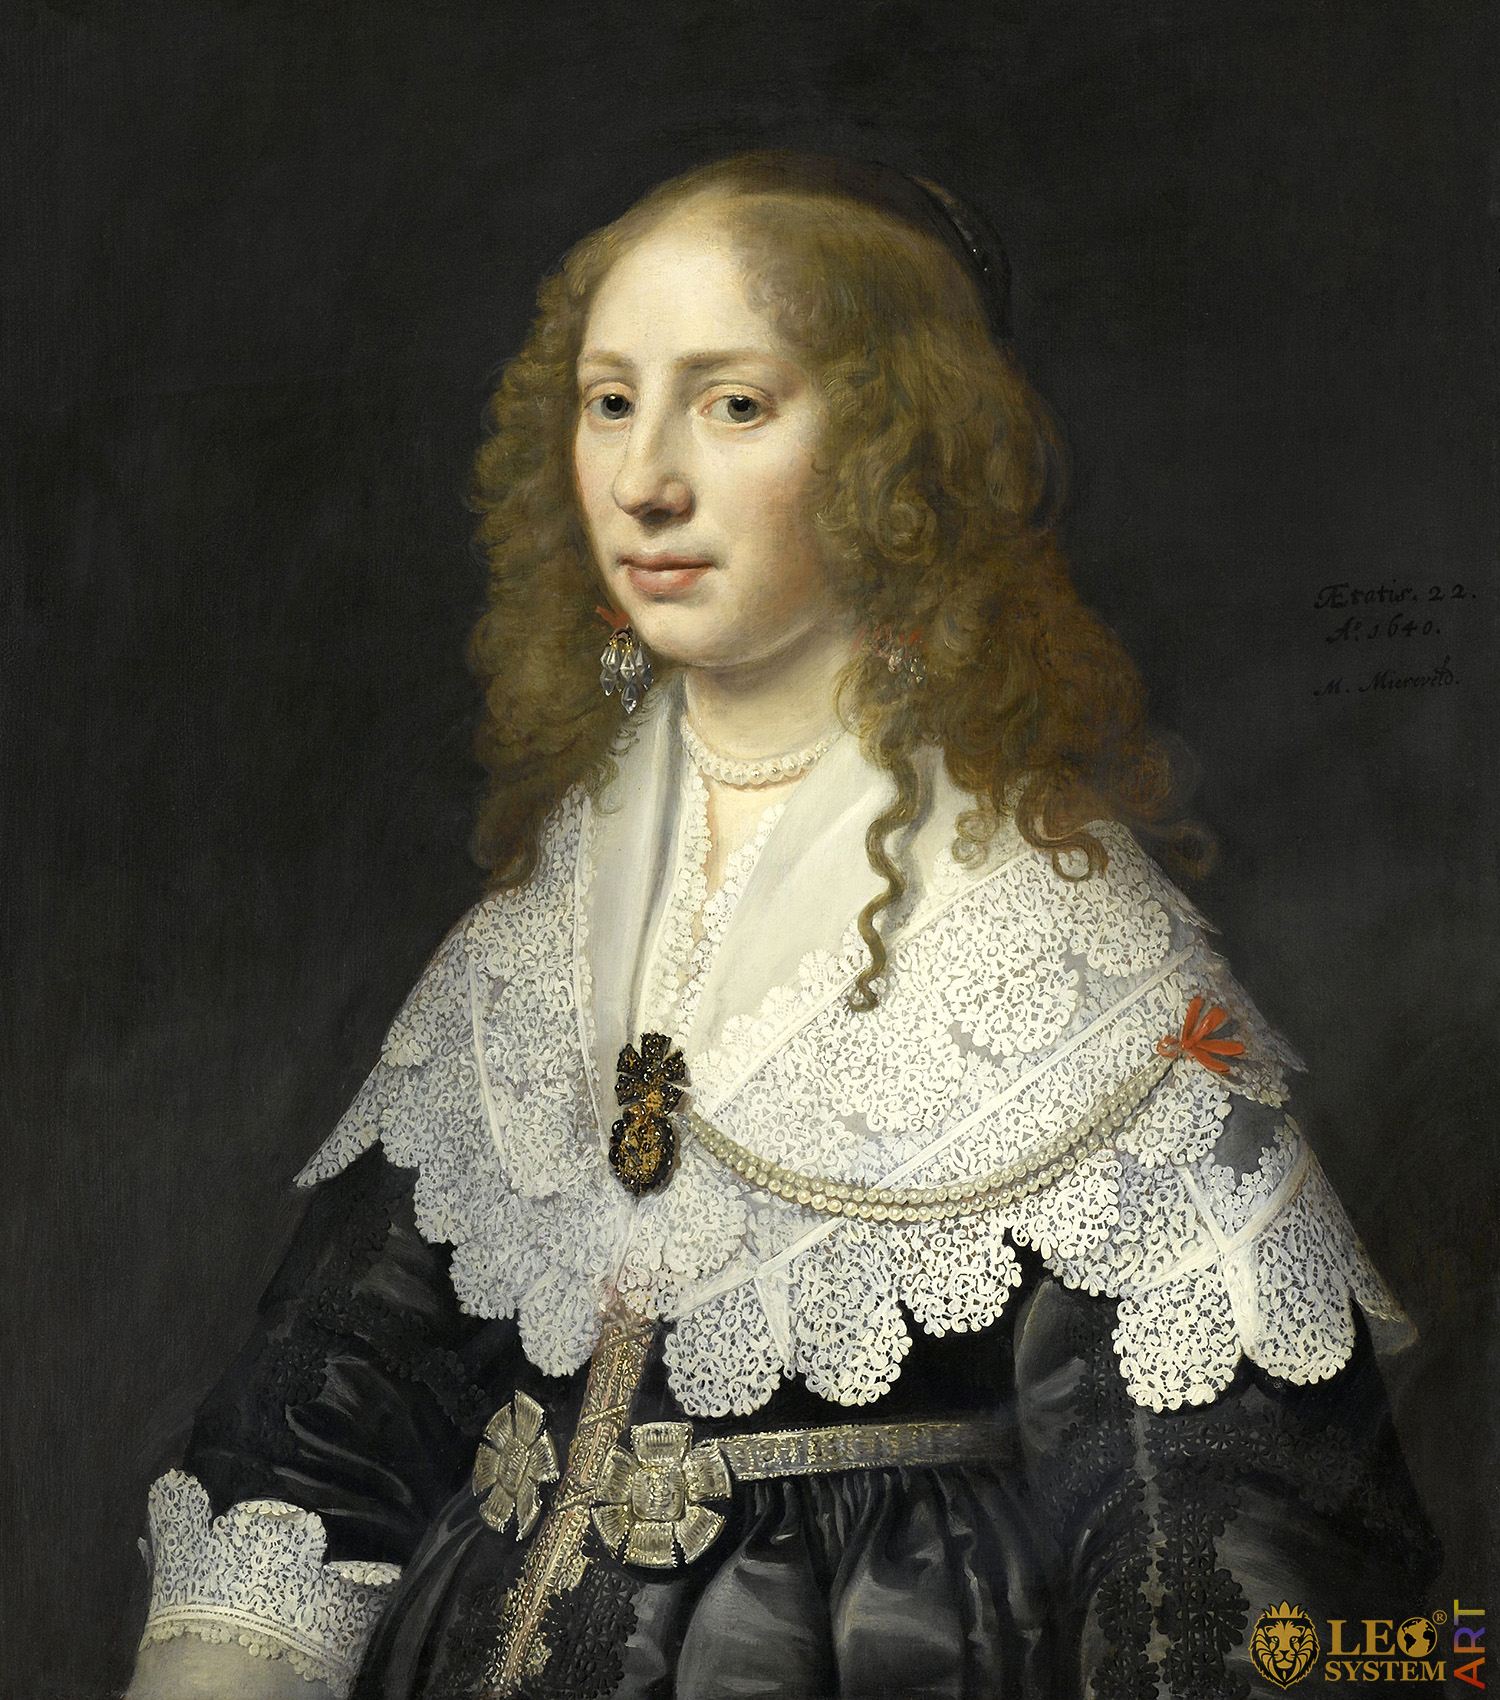 Portrait of Aegje Hasselaer, Painter: Michiel Jansz van Mierevelt, 1640, Dutch Painting